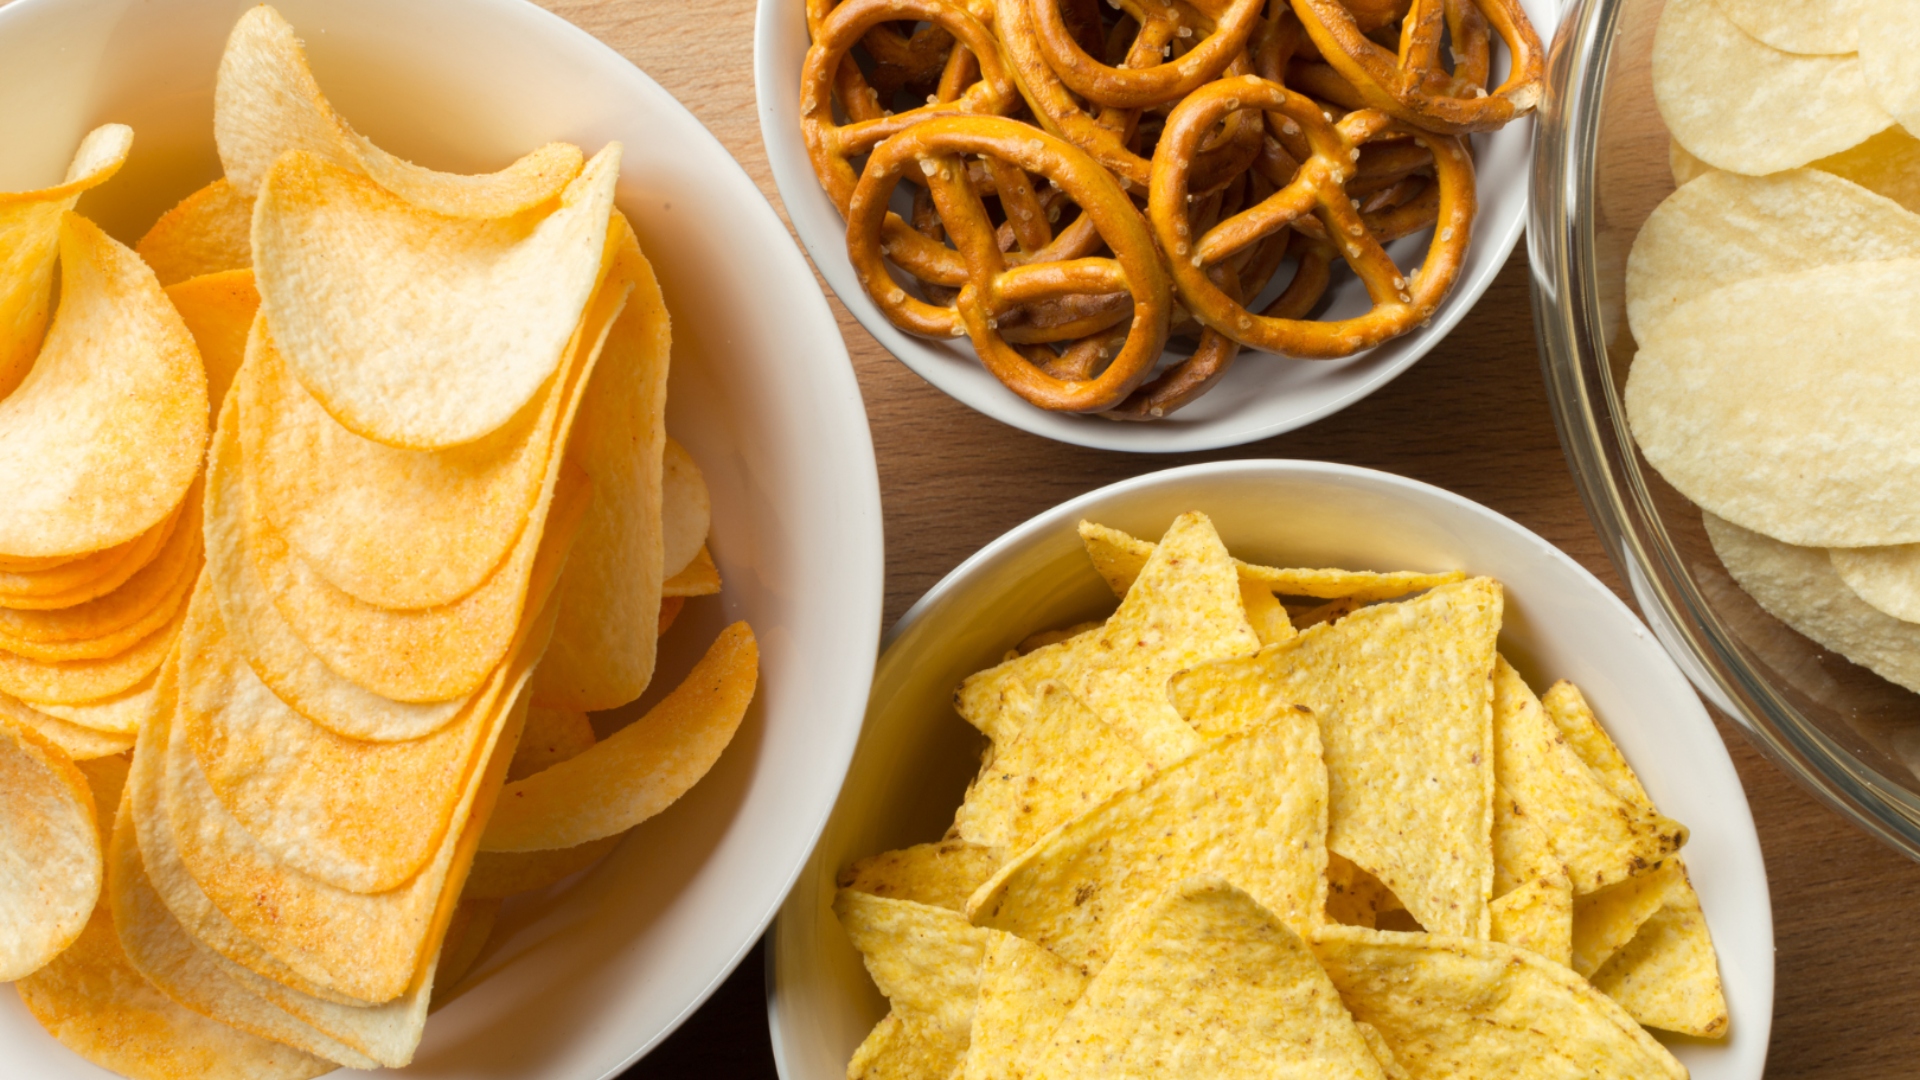 Otros bocadillos favoritos para ‘dippear’ son papas fritas, verduras y pretzels. Se espera que el día del partido se consuman más de 5 millones de kilos de papas fritas, 3.6 millones de kilos de chips de tortilla y 1.8 millones de kilos de pretzels.